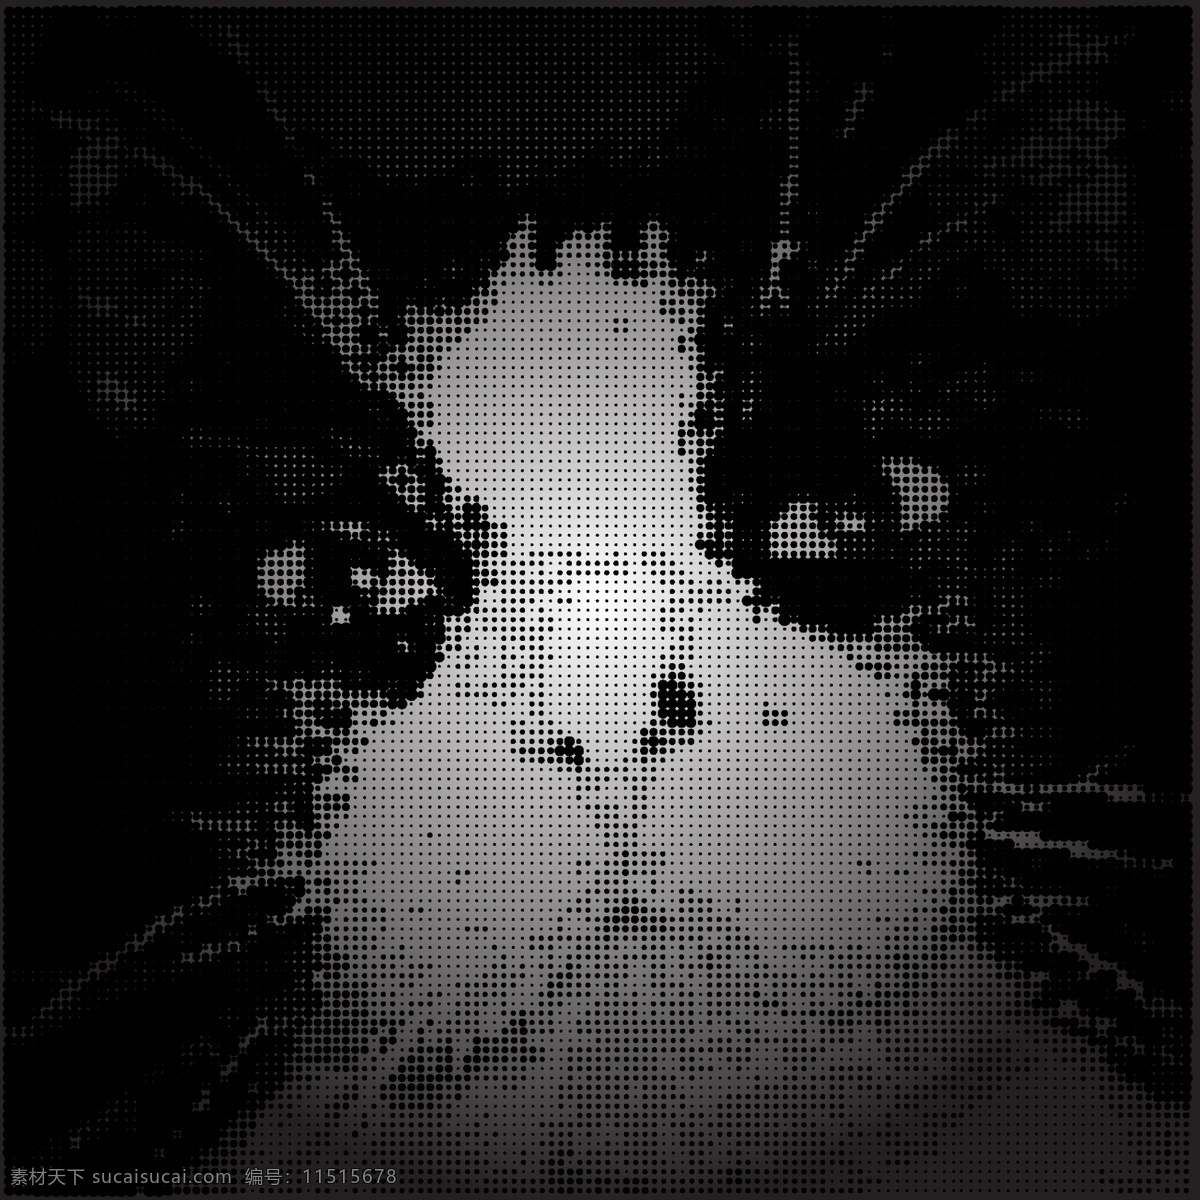 猫咪 剪影 像素 画 矢量图 其他矢量图